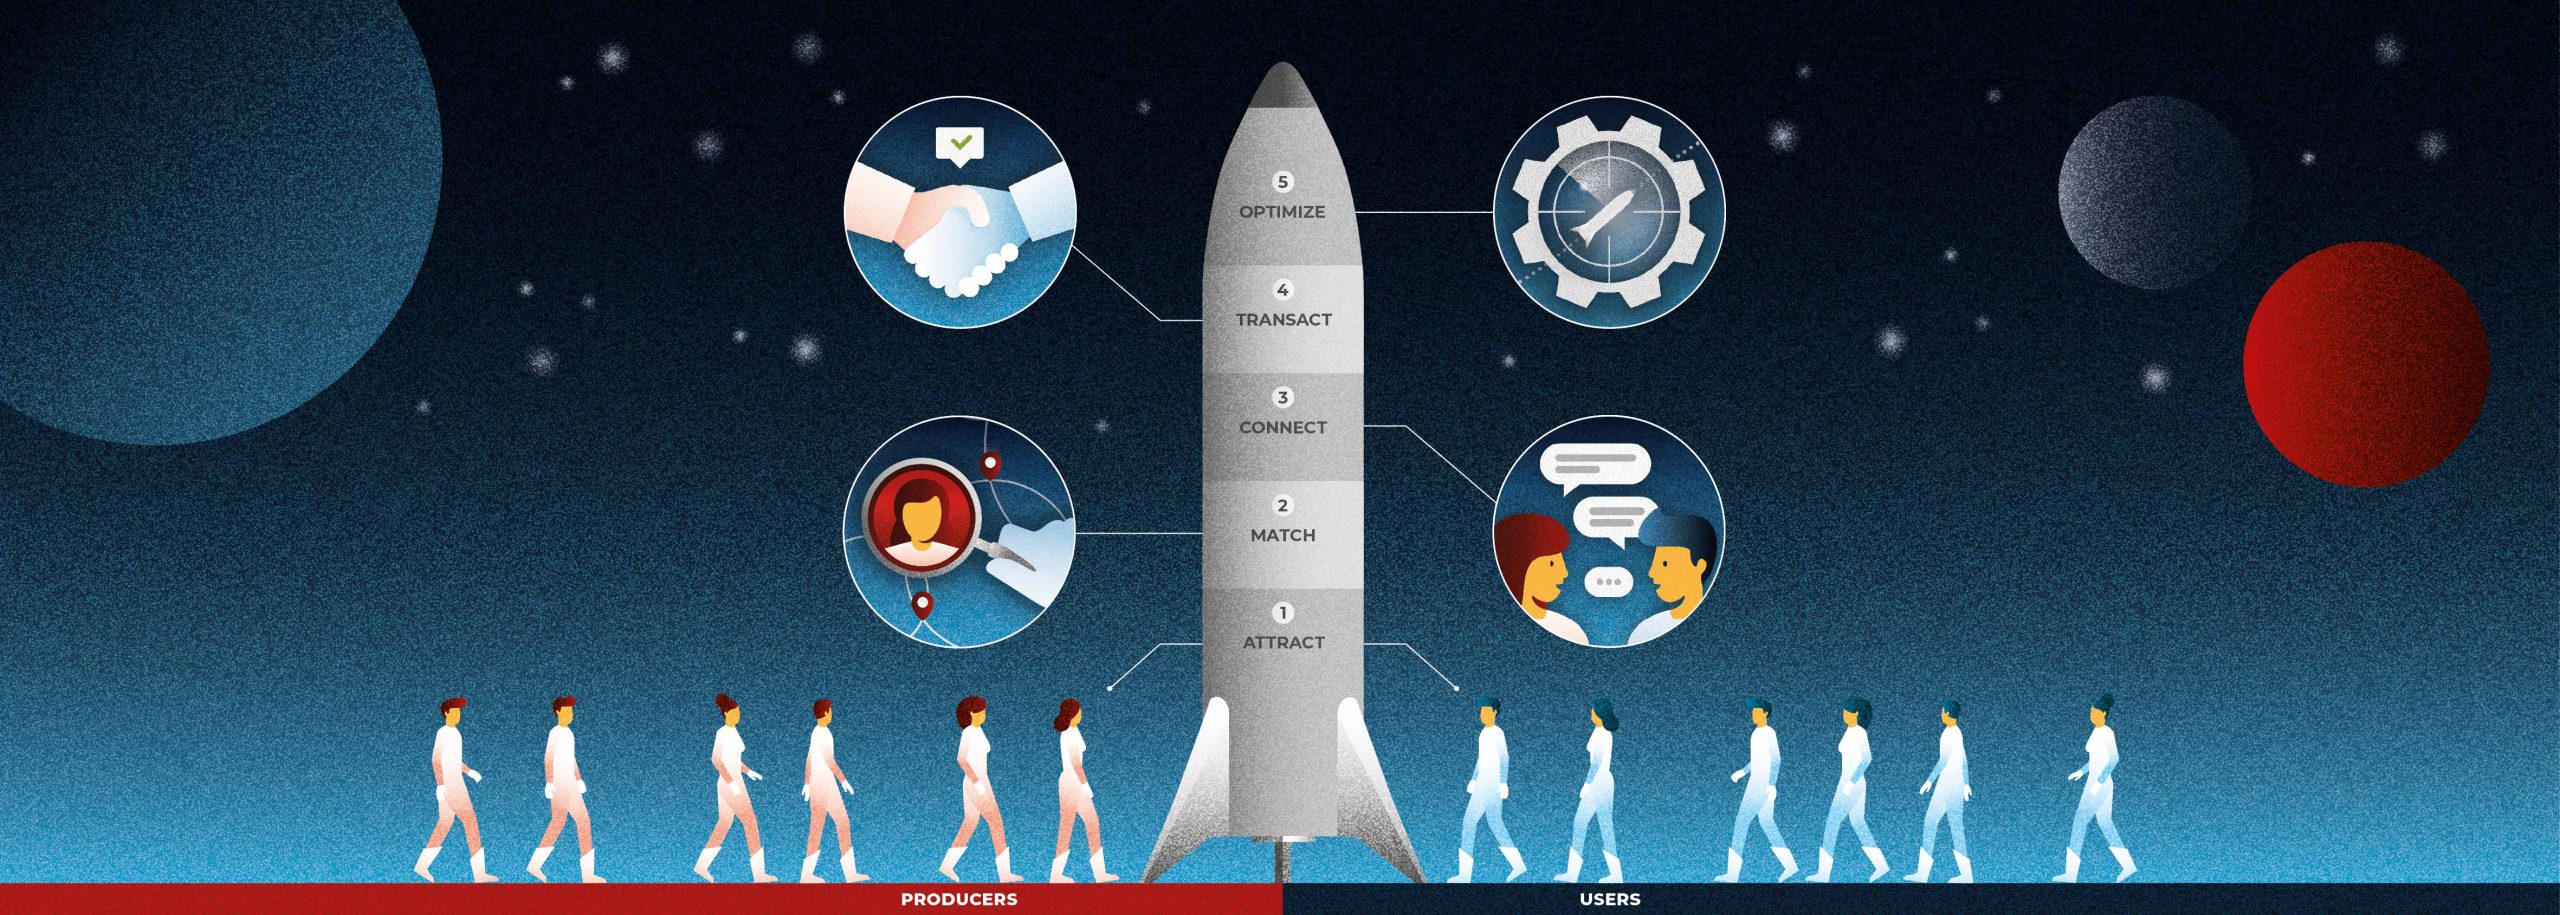 Inscrições Rocket 2022: confira o passo a passo para participar, ÚLTIMAS  NOTÍCIAS